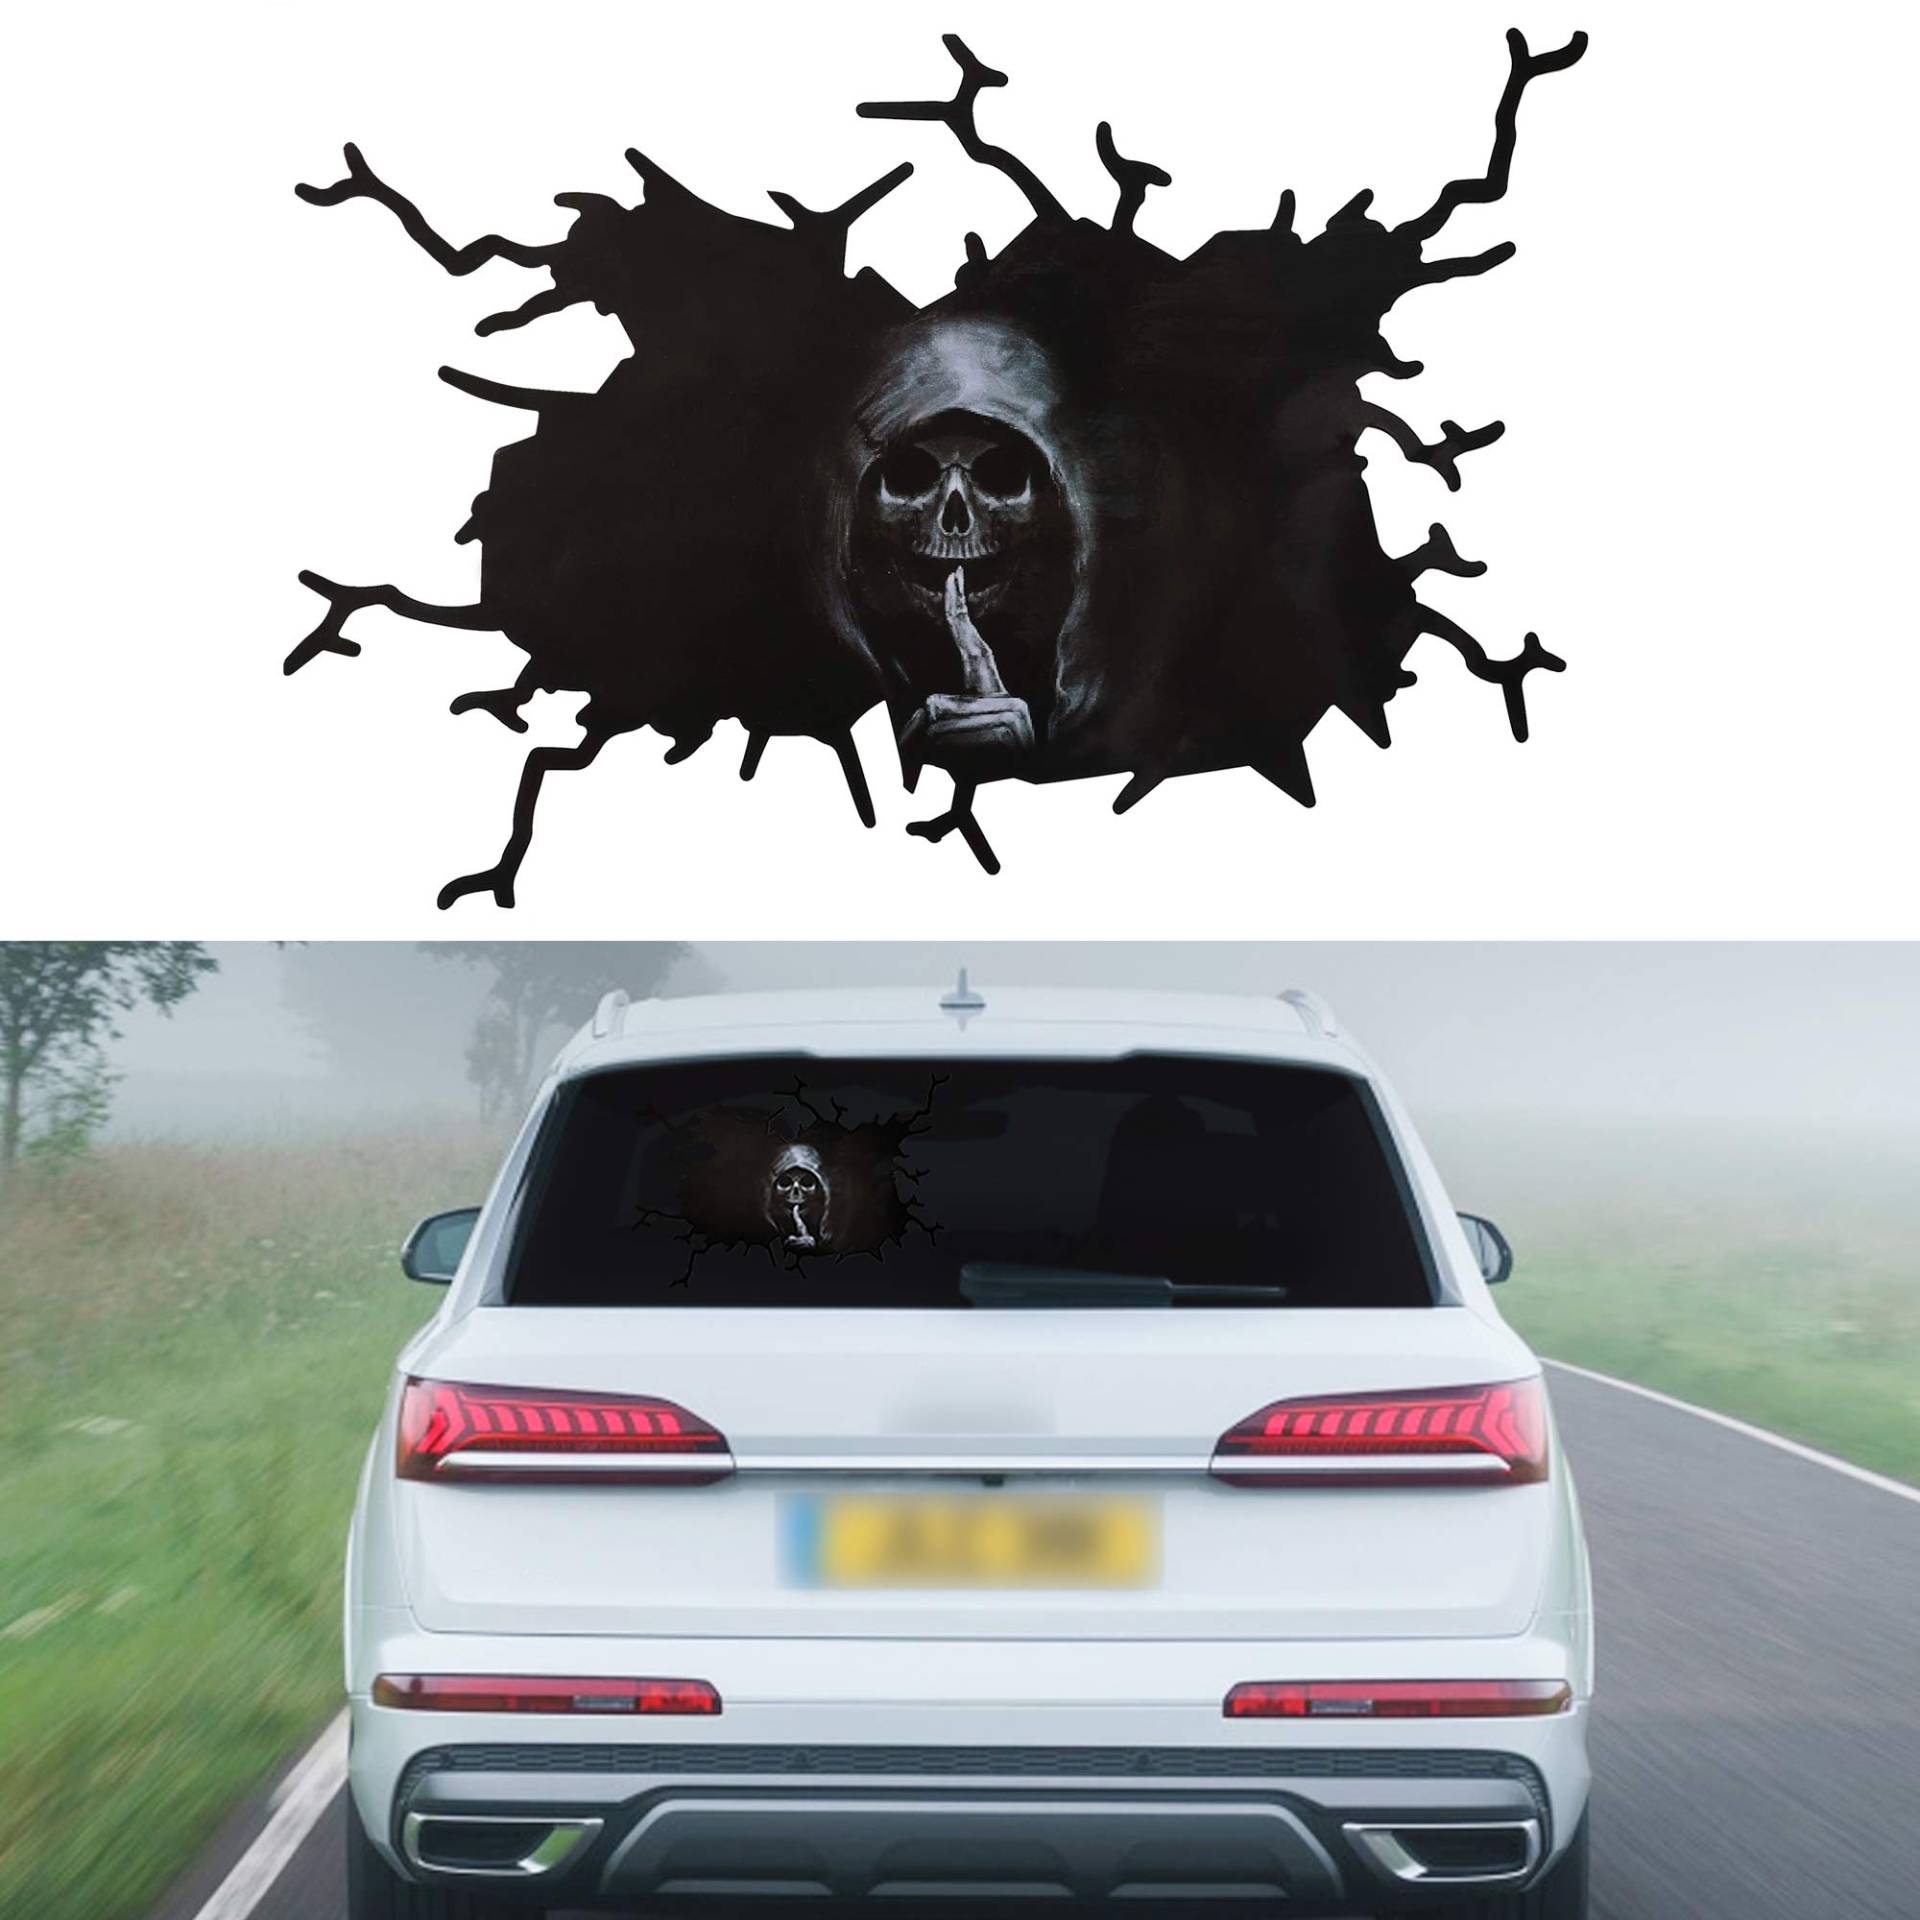 TOMALL 1 Stück 3D Silent Skull Aufkleber für Auto Halloween Thema Scary Grim Reaper Ghost Aufkleber für Auto LKW Fenster Windschutzscheibe Tür Kofferraum Wand Lustige kreative Dekoration (39cm) von TOMALL